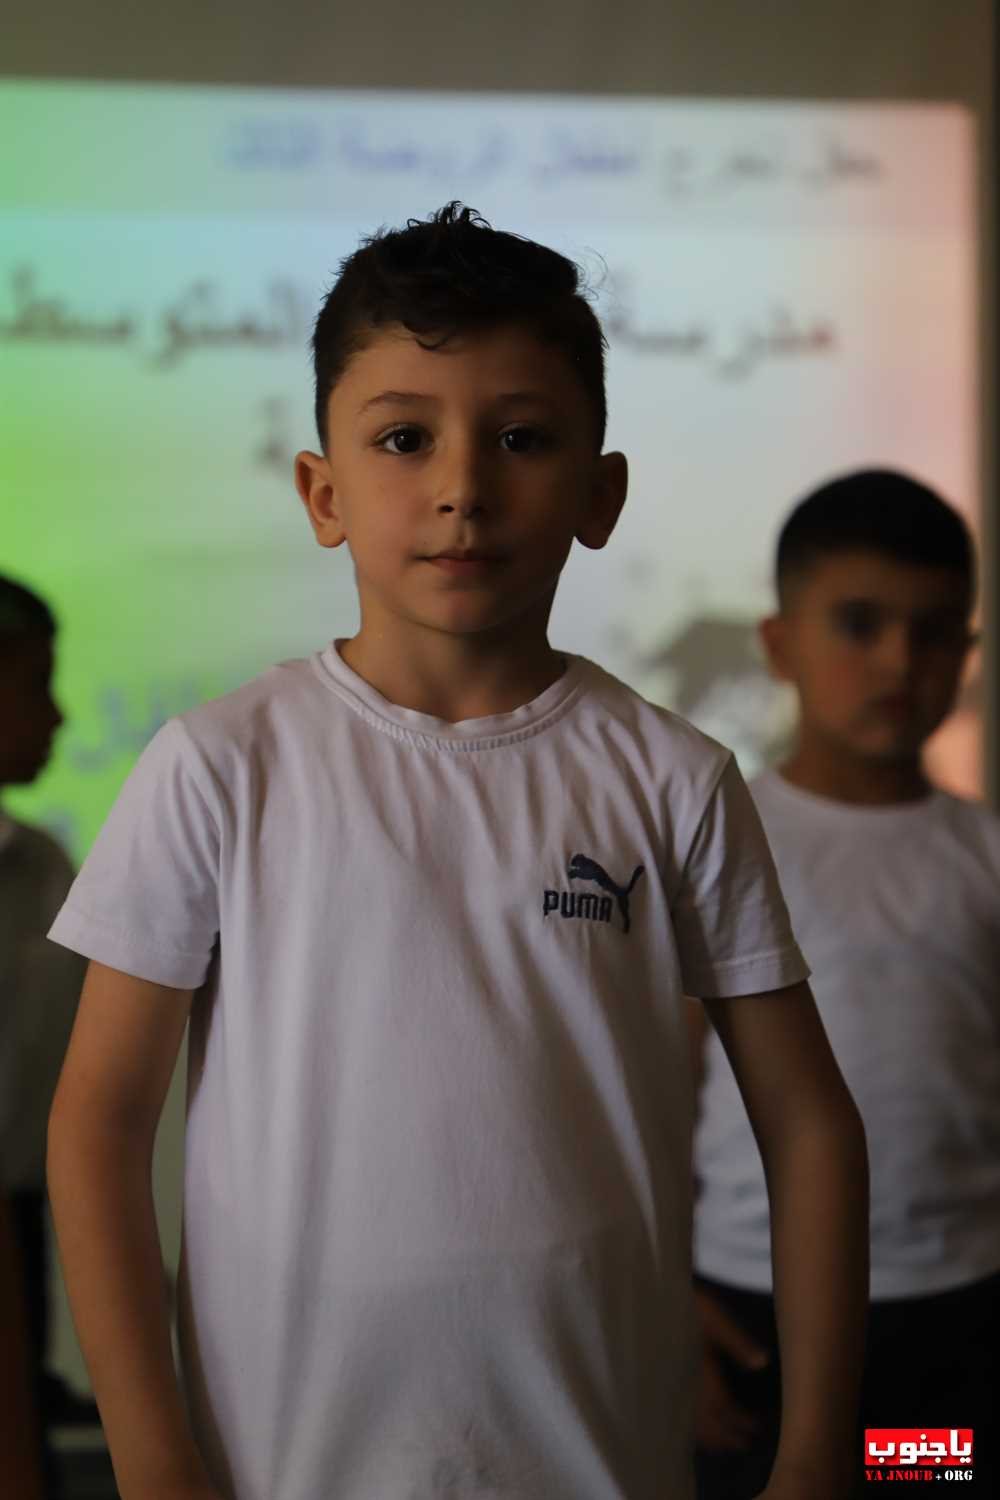 احتفال تربوي في مدرسة طيردبا المتوسطة الرسمية (100) صورة  تصوير : وسام حسن  الجزء الثاني من الصور 